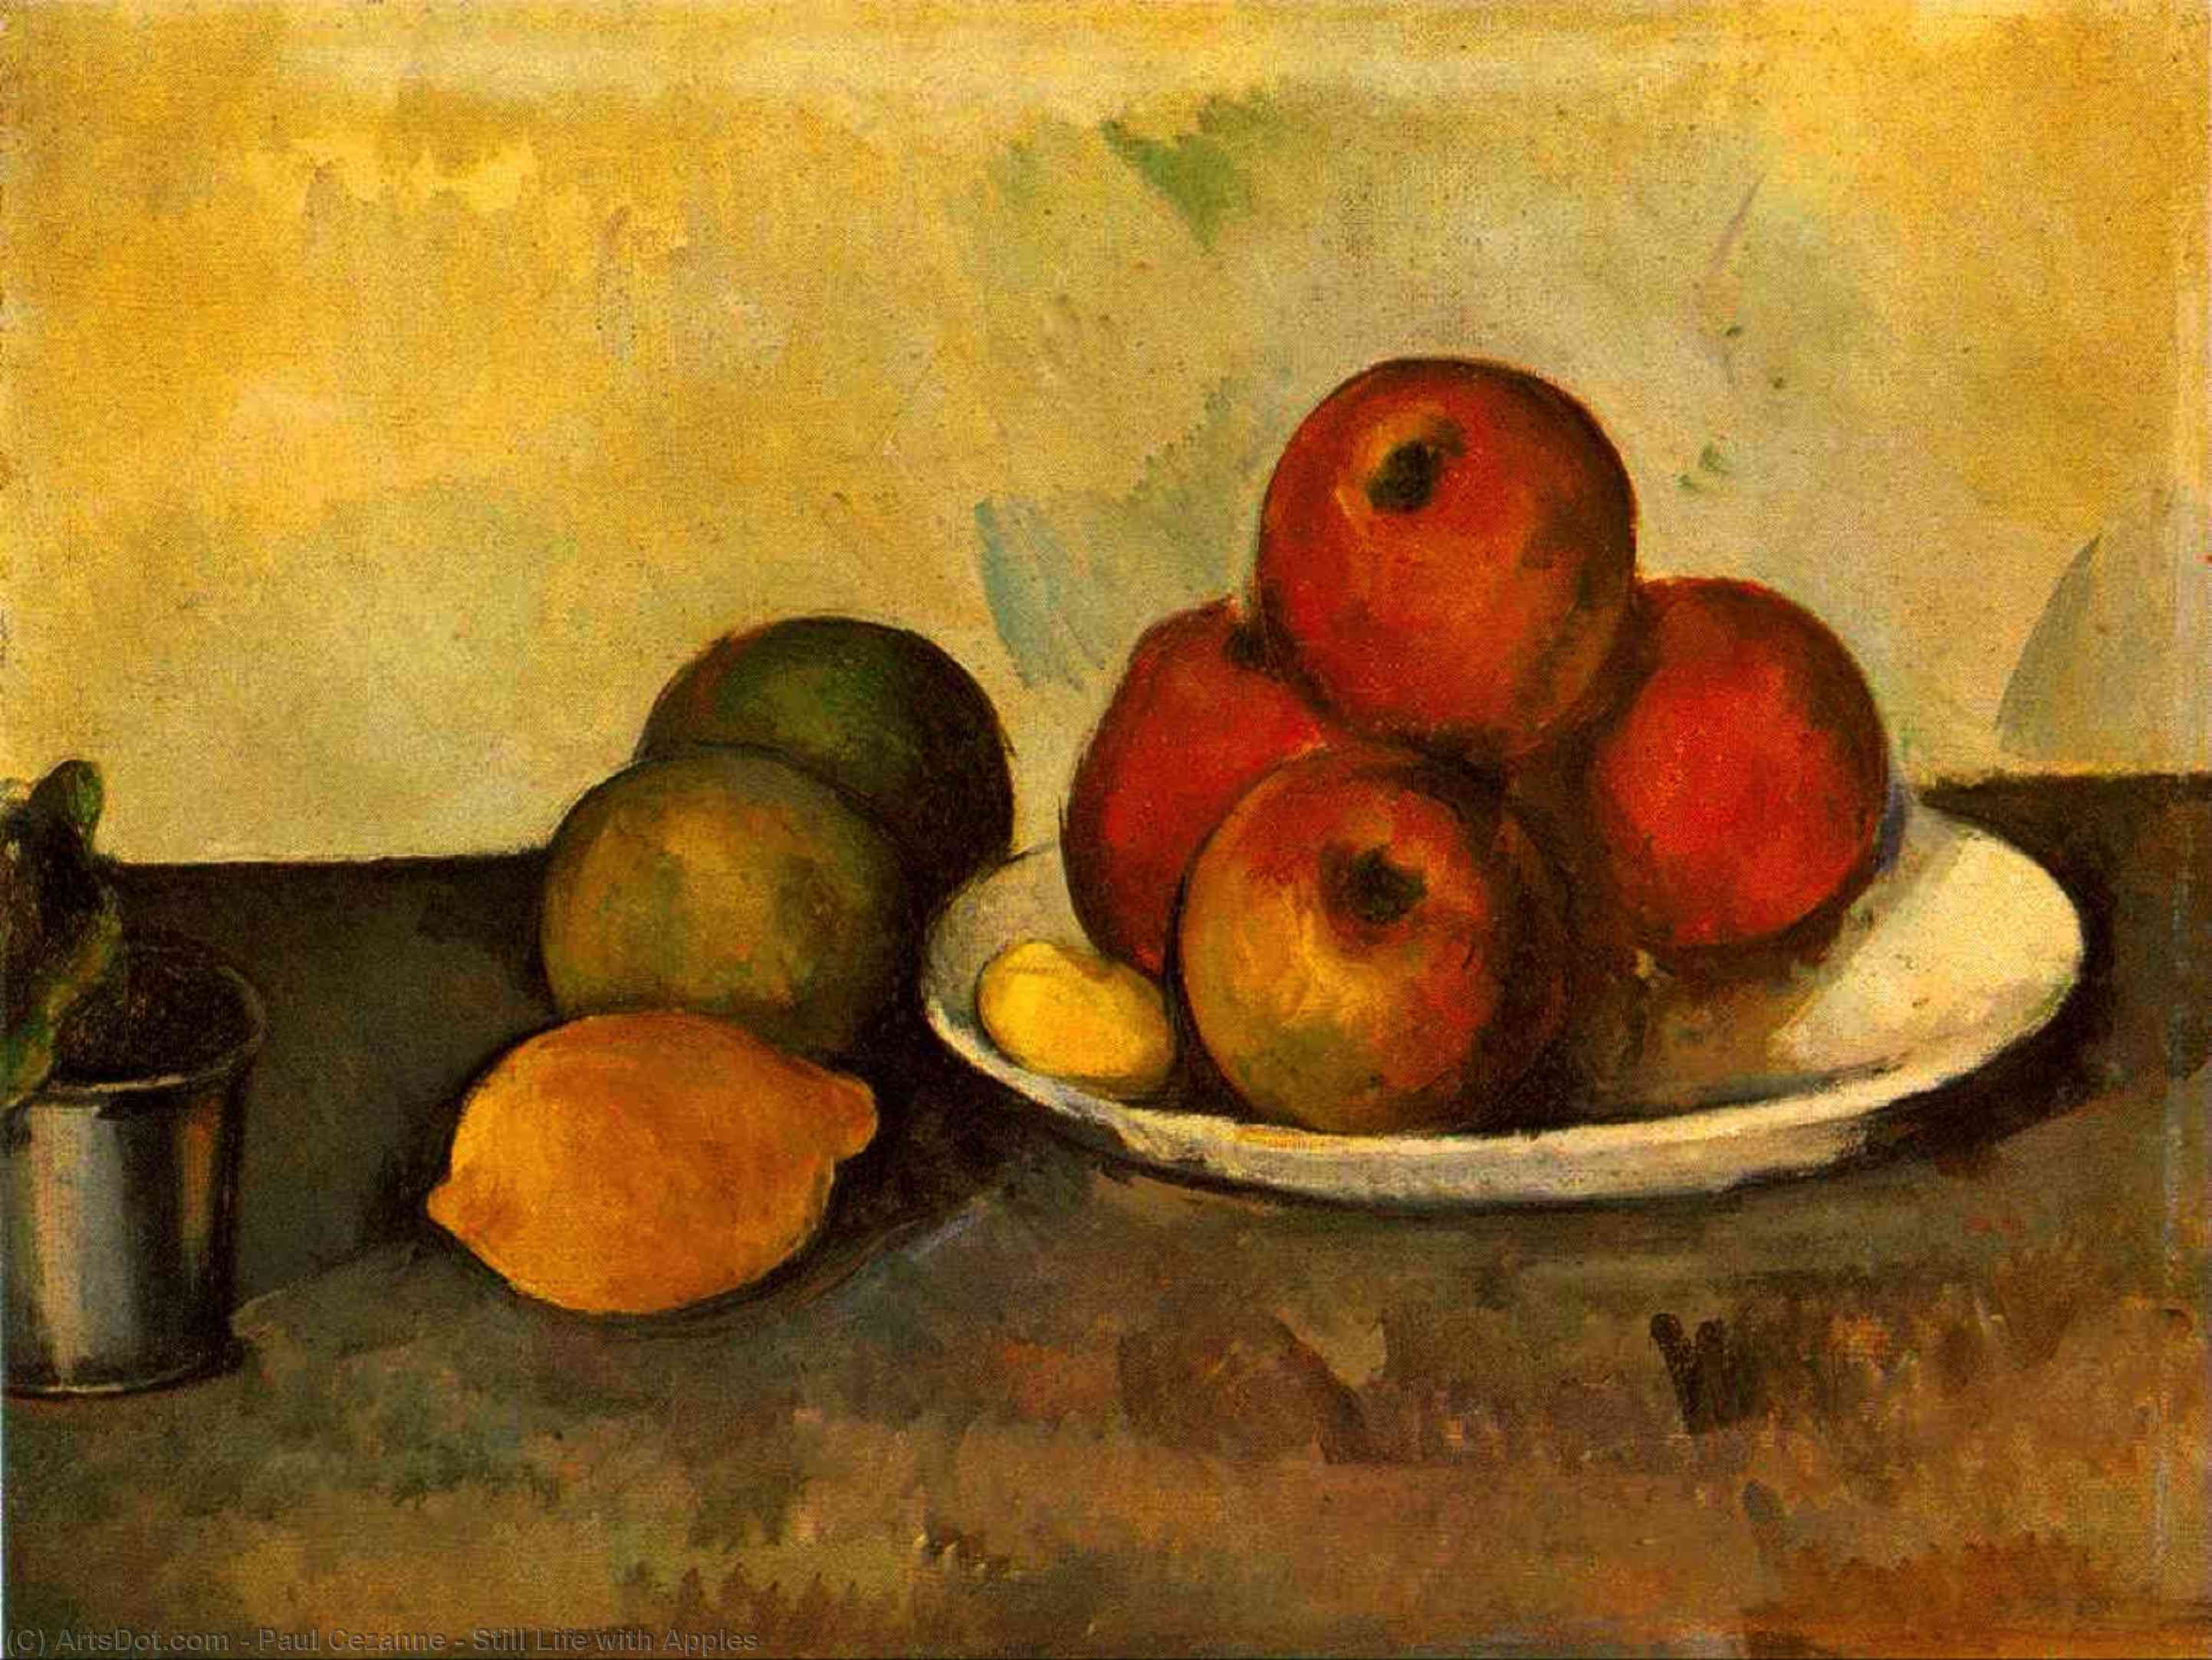 Compra Riproduzioni D'arte Del Museo Natura morta con mele, 1890 di Paul Cezanne (1839-1906, France) | ArtsDot.com